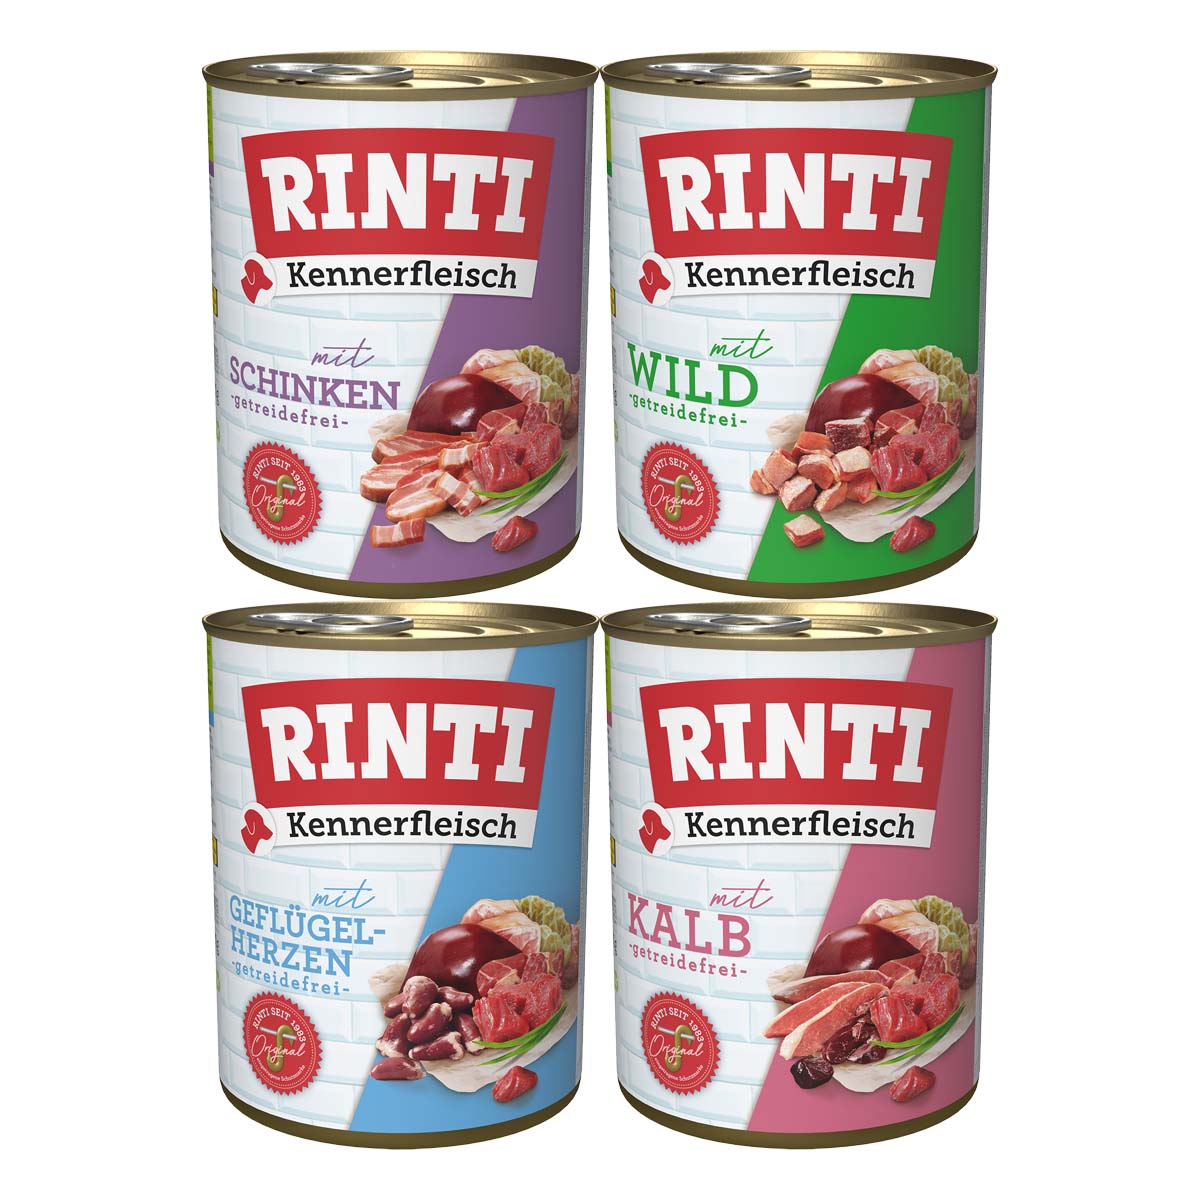 Rinti Kennerfleisch Paket 1 12x800g von Rinti